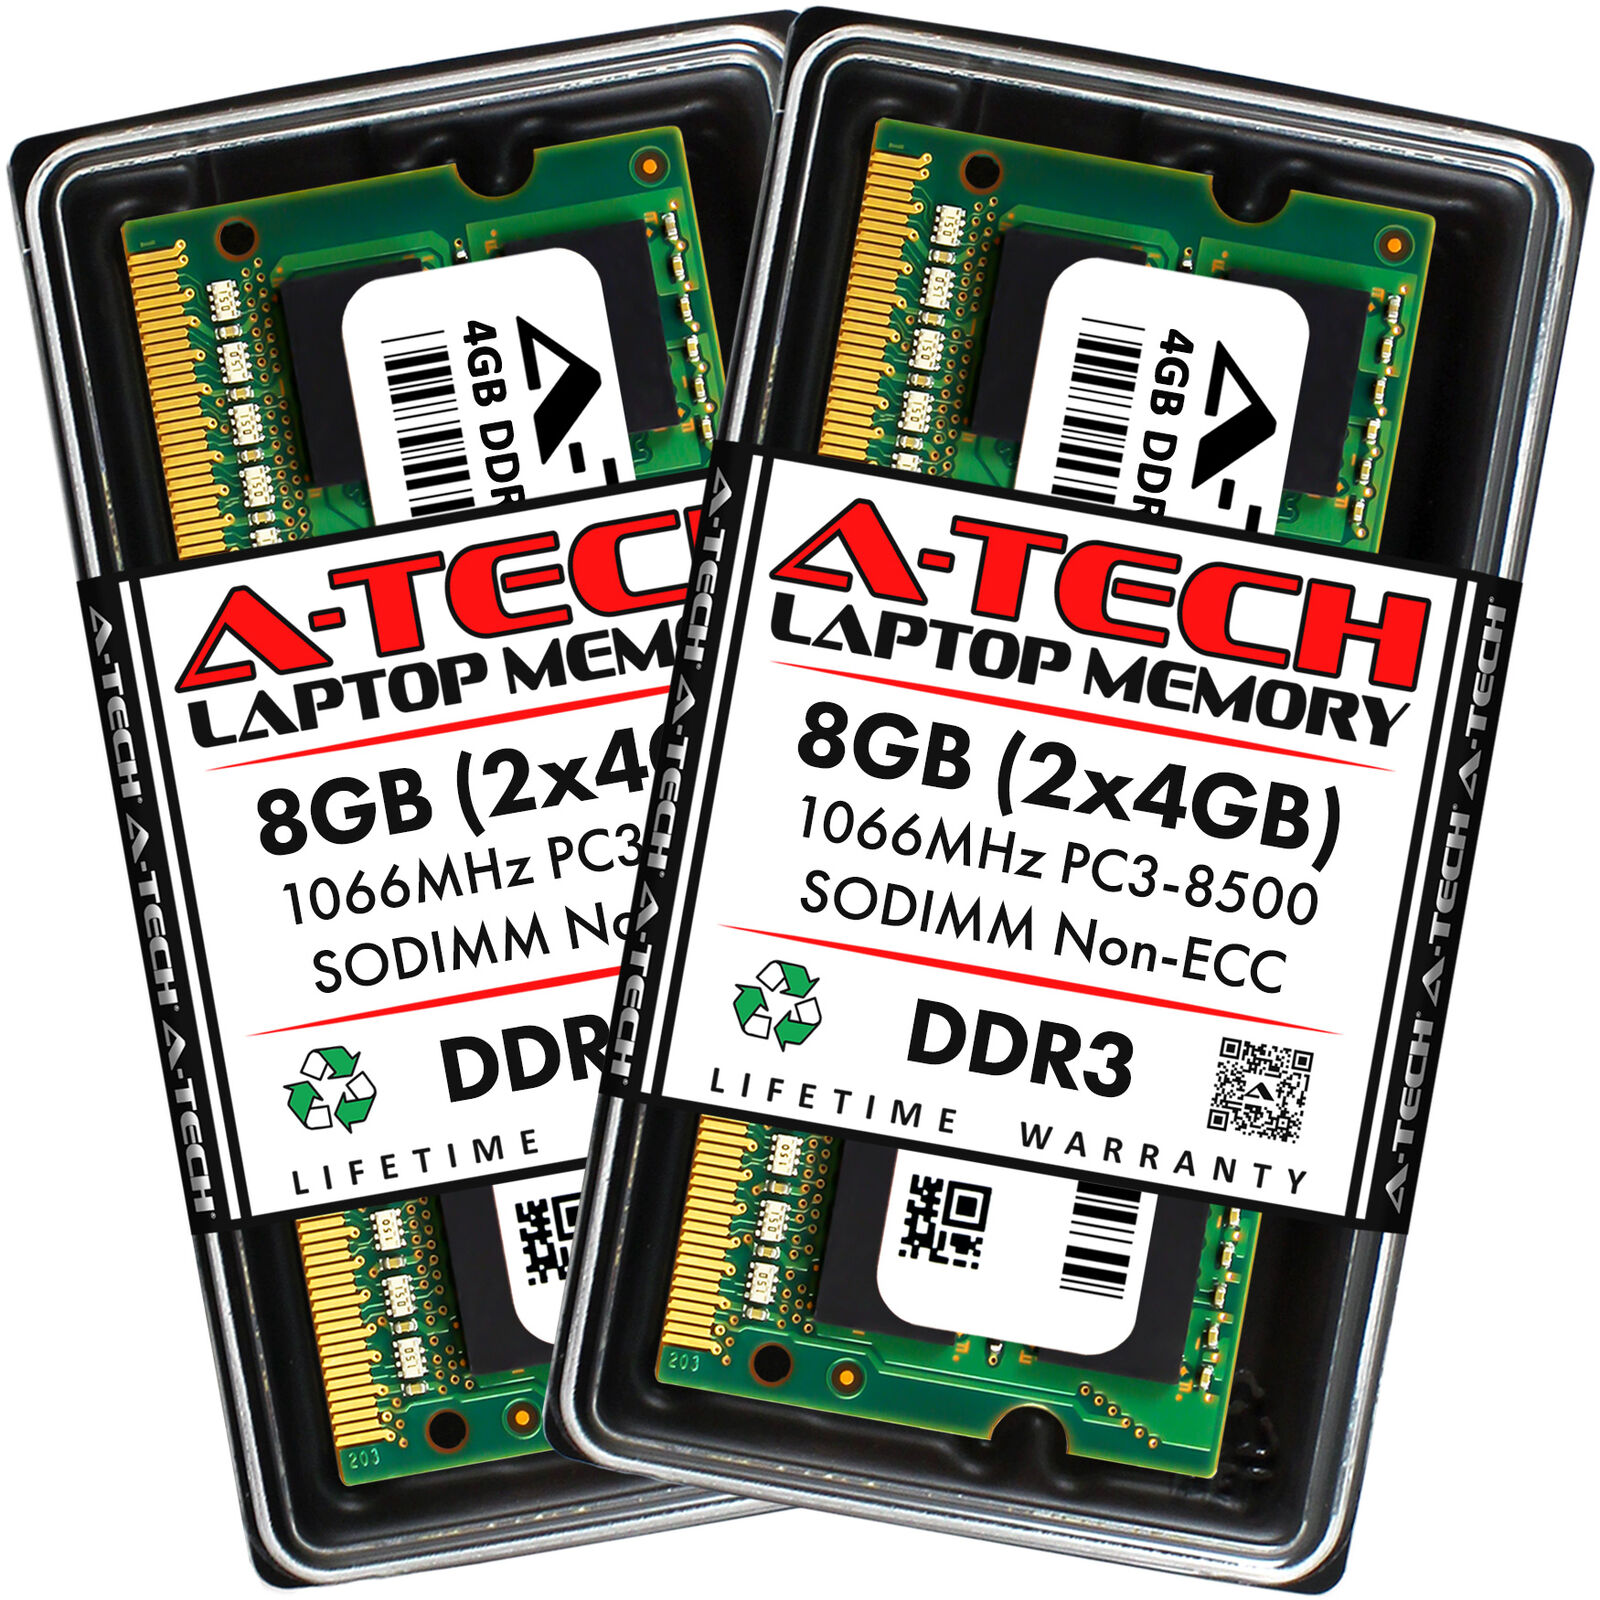 8GB KIT 2 x 4GB SODIMM DDR3 NON-ECC PC3-8500 1066MHz 1066 MHz DDR-3 Ram Memory